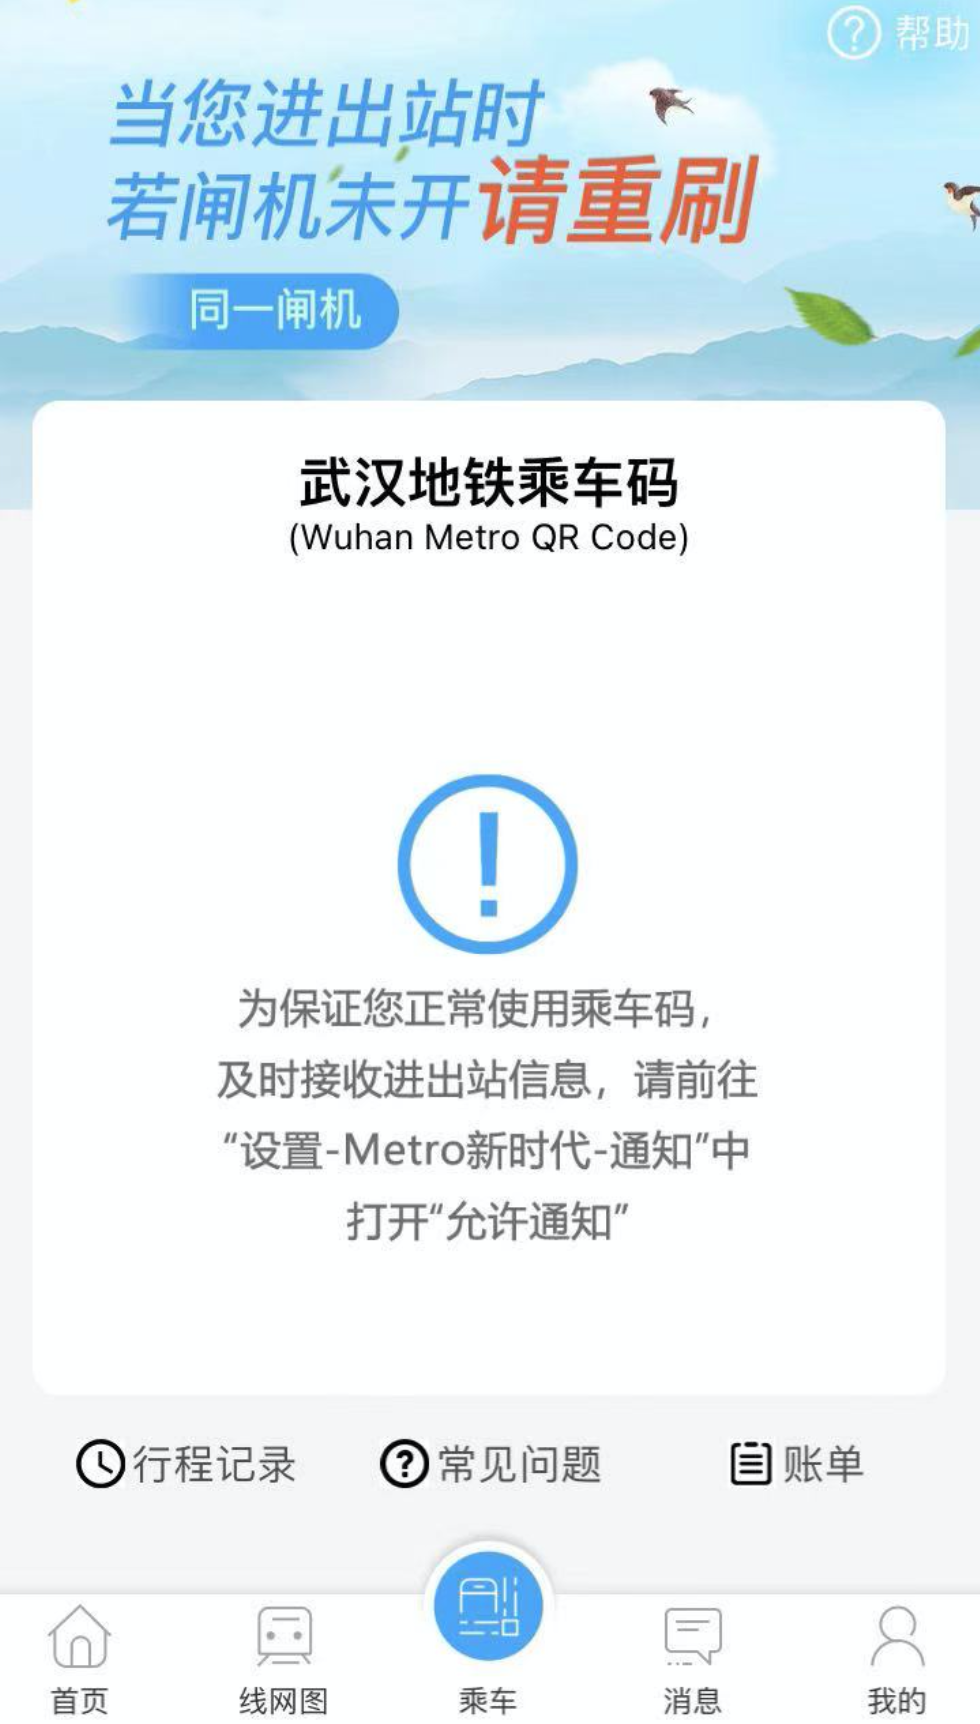 国庆打算去武汉旅游，被武汉扫码坐地铁的 app 恶心到了，求问其它方便坐地铁的方式